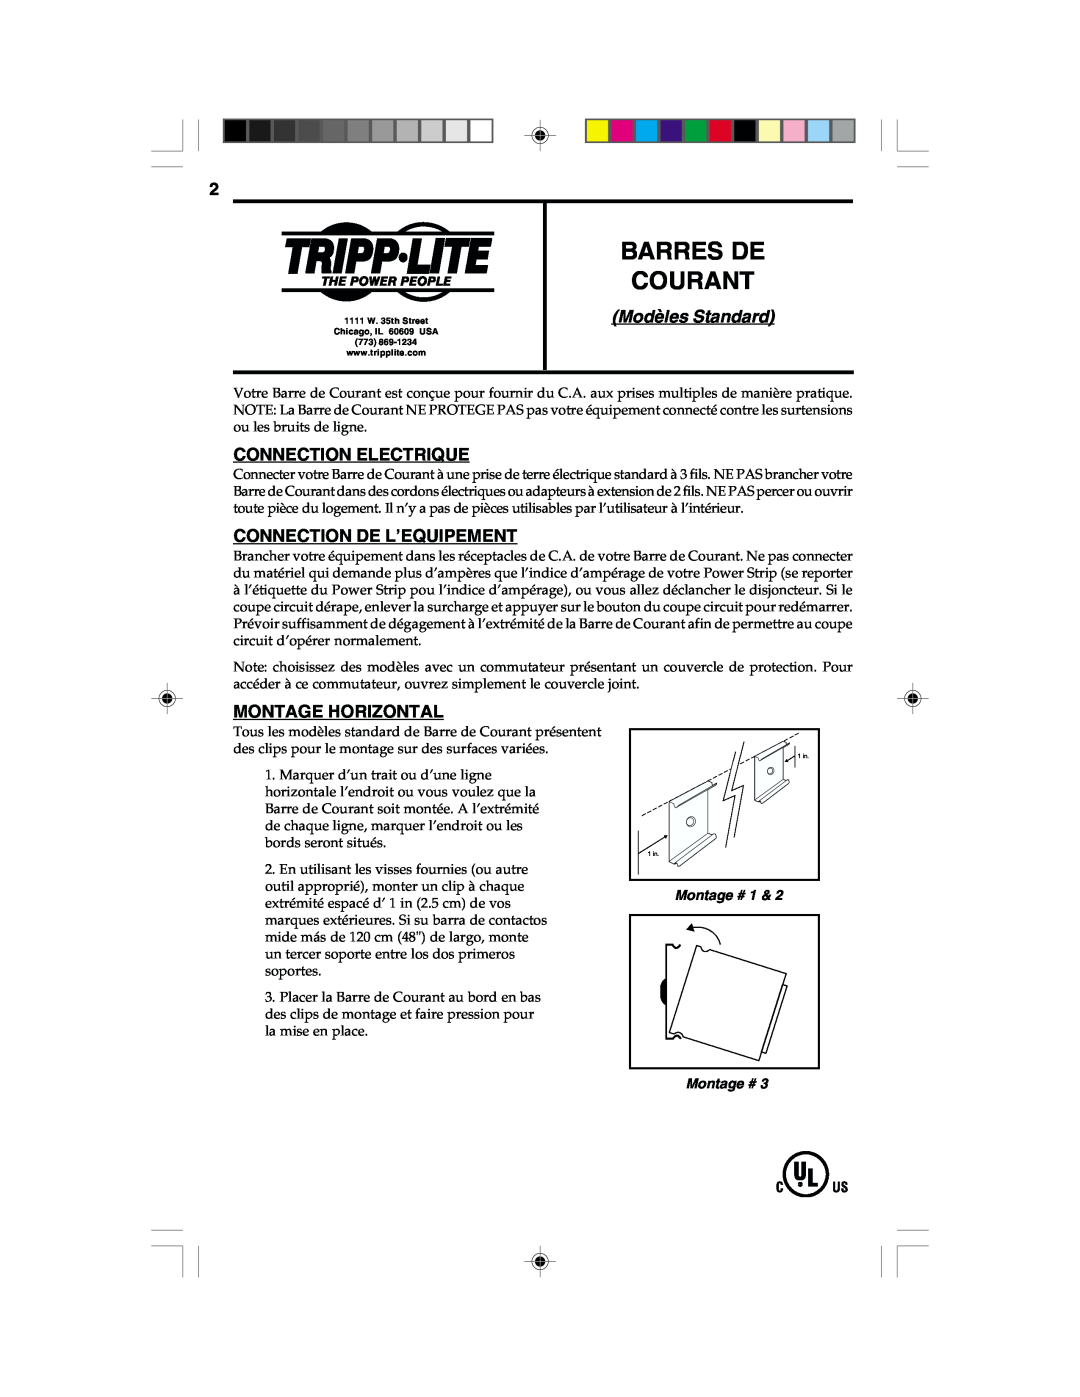 Tripp Lite Surge Protector Barres De Courant, Modèles Standard, Connection Electrique, Connection De L’Equipement 